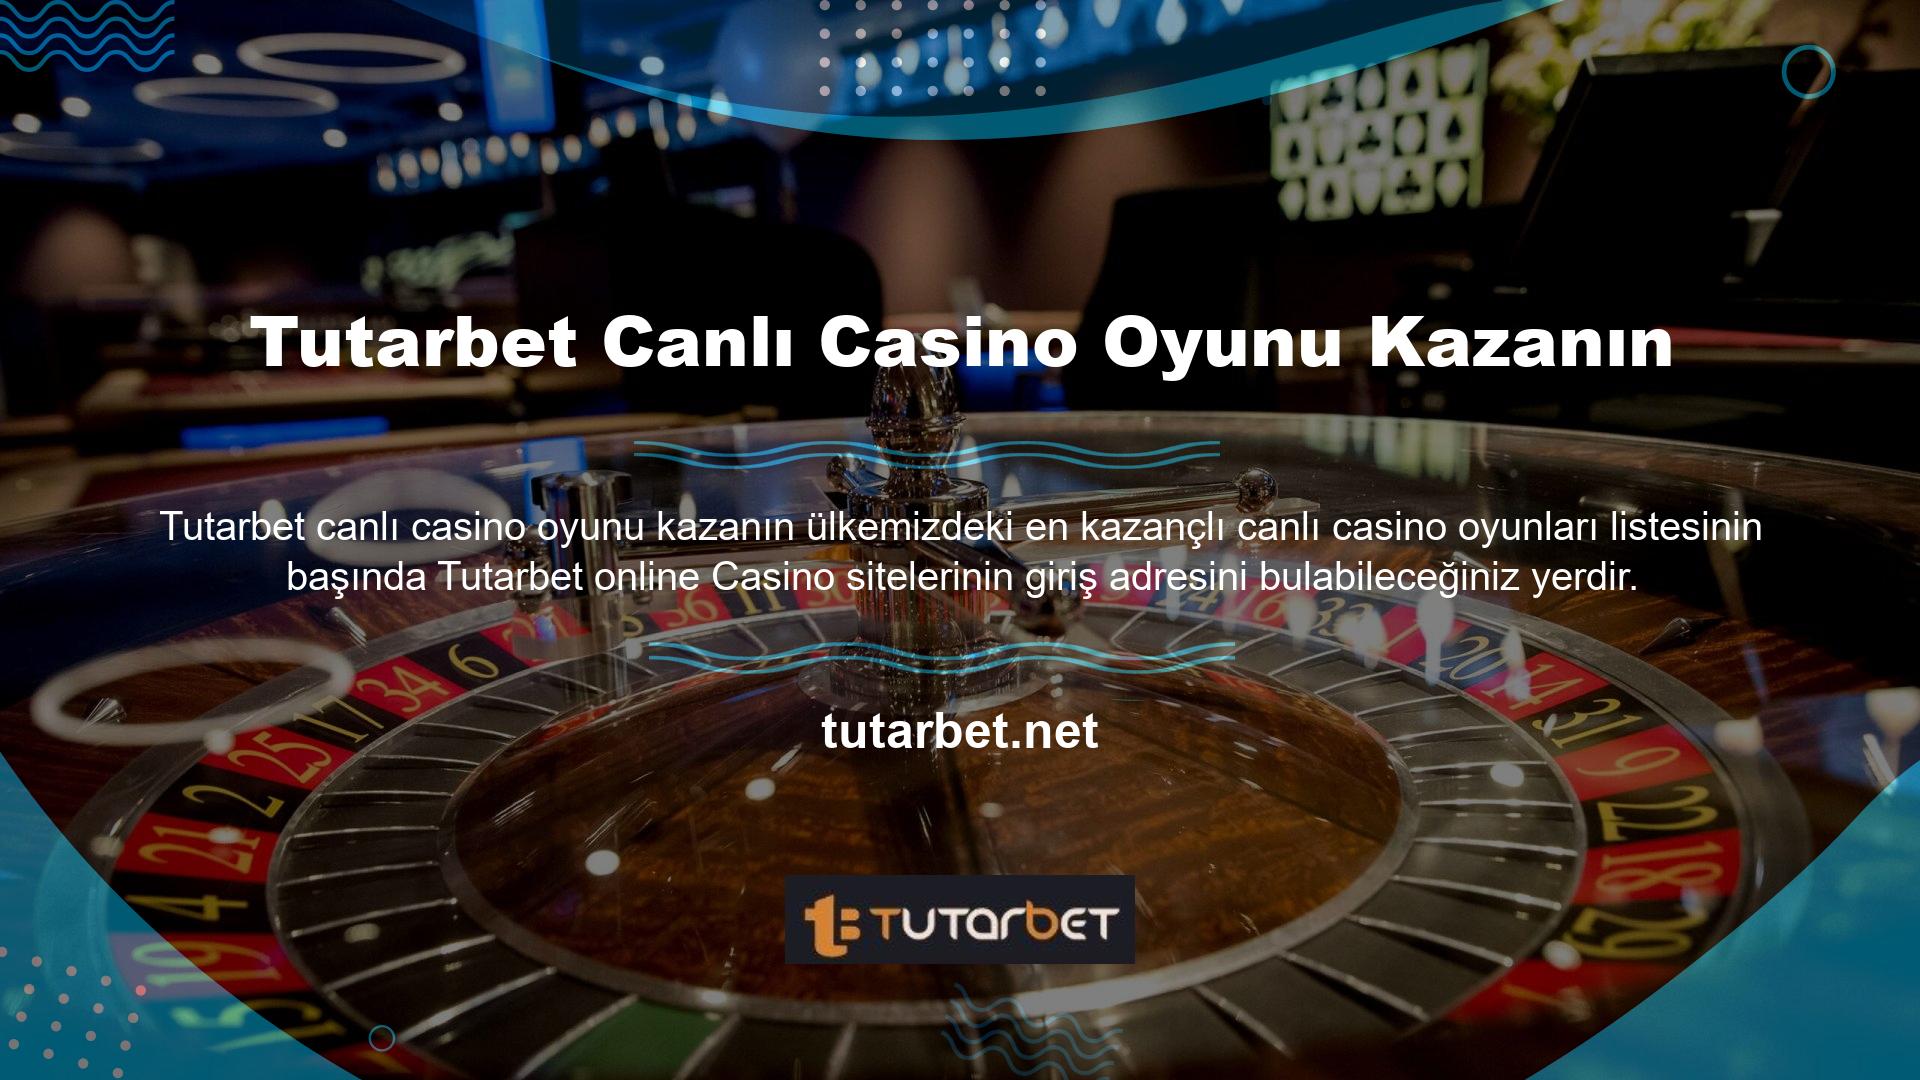 Tutarbet canlı casino oyunları kazançları sorusuna evet yanıtı verilmeli